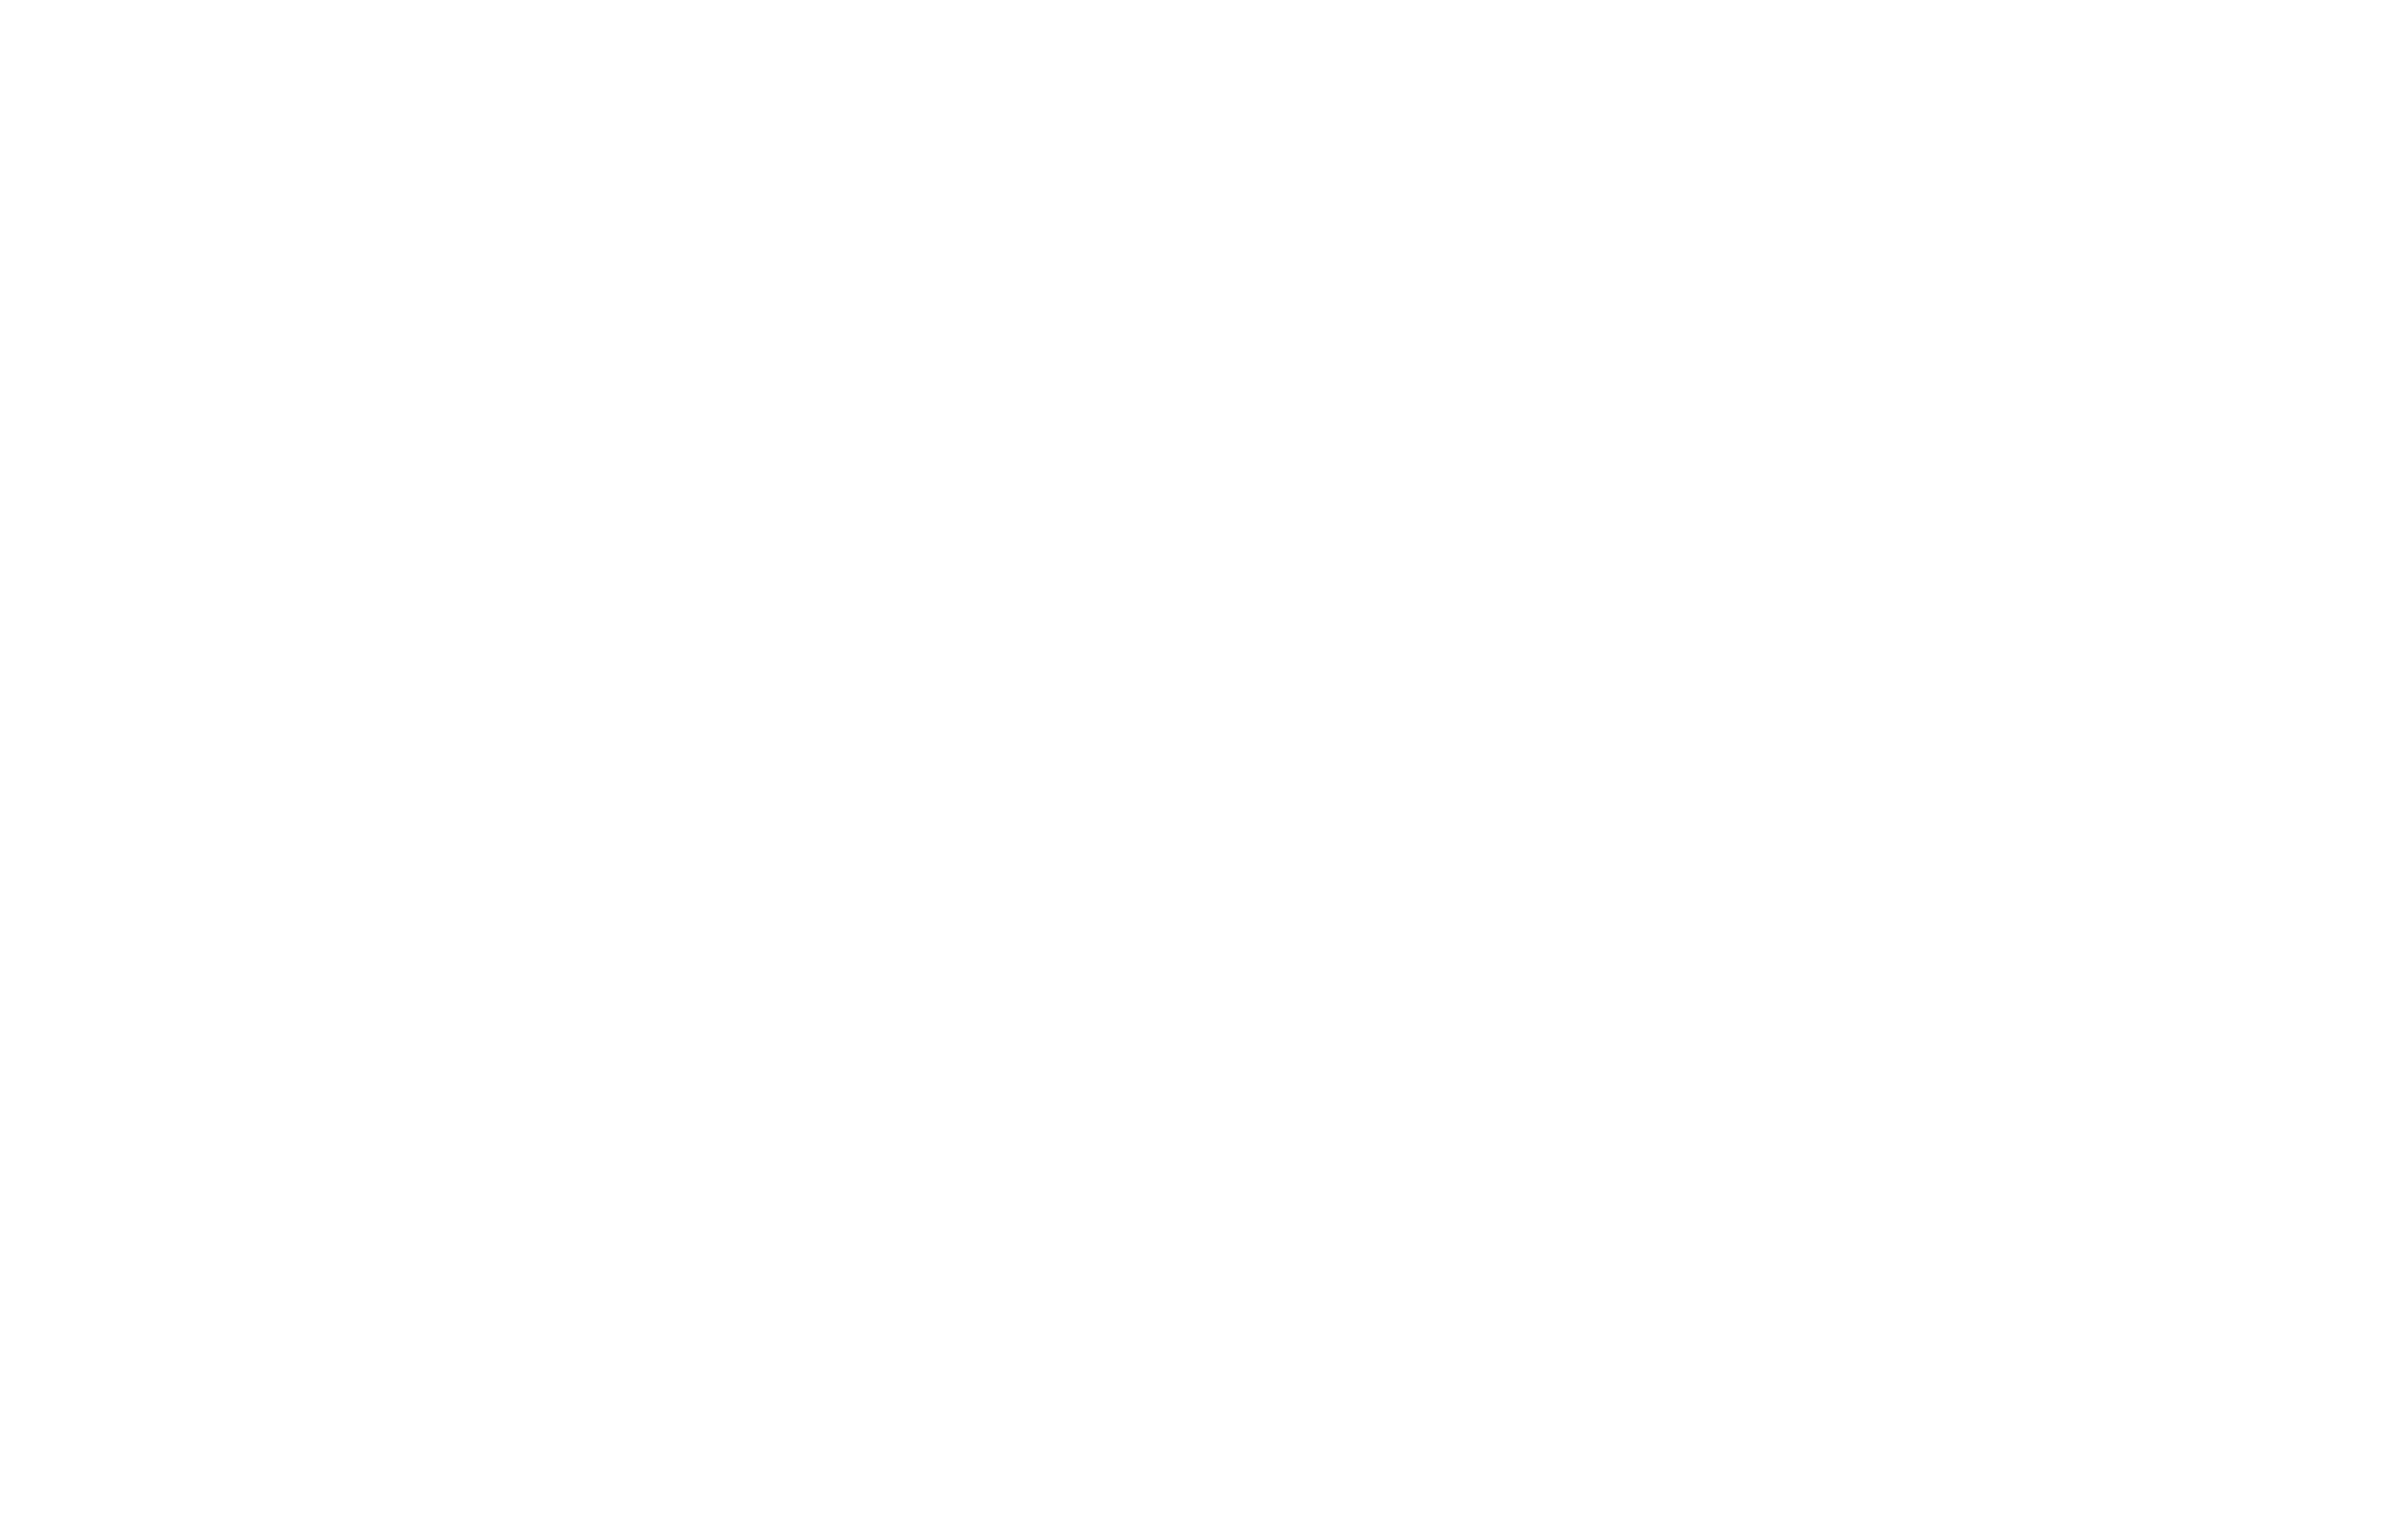 APEX Civilian